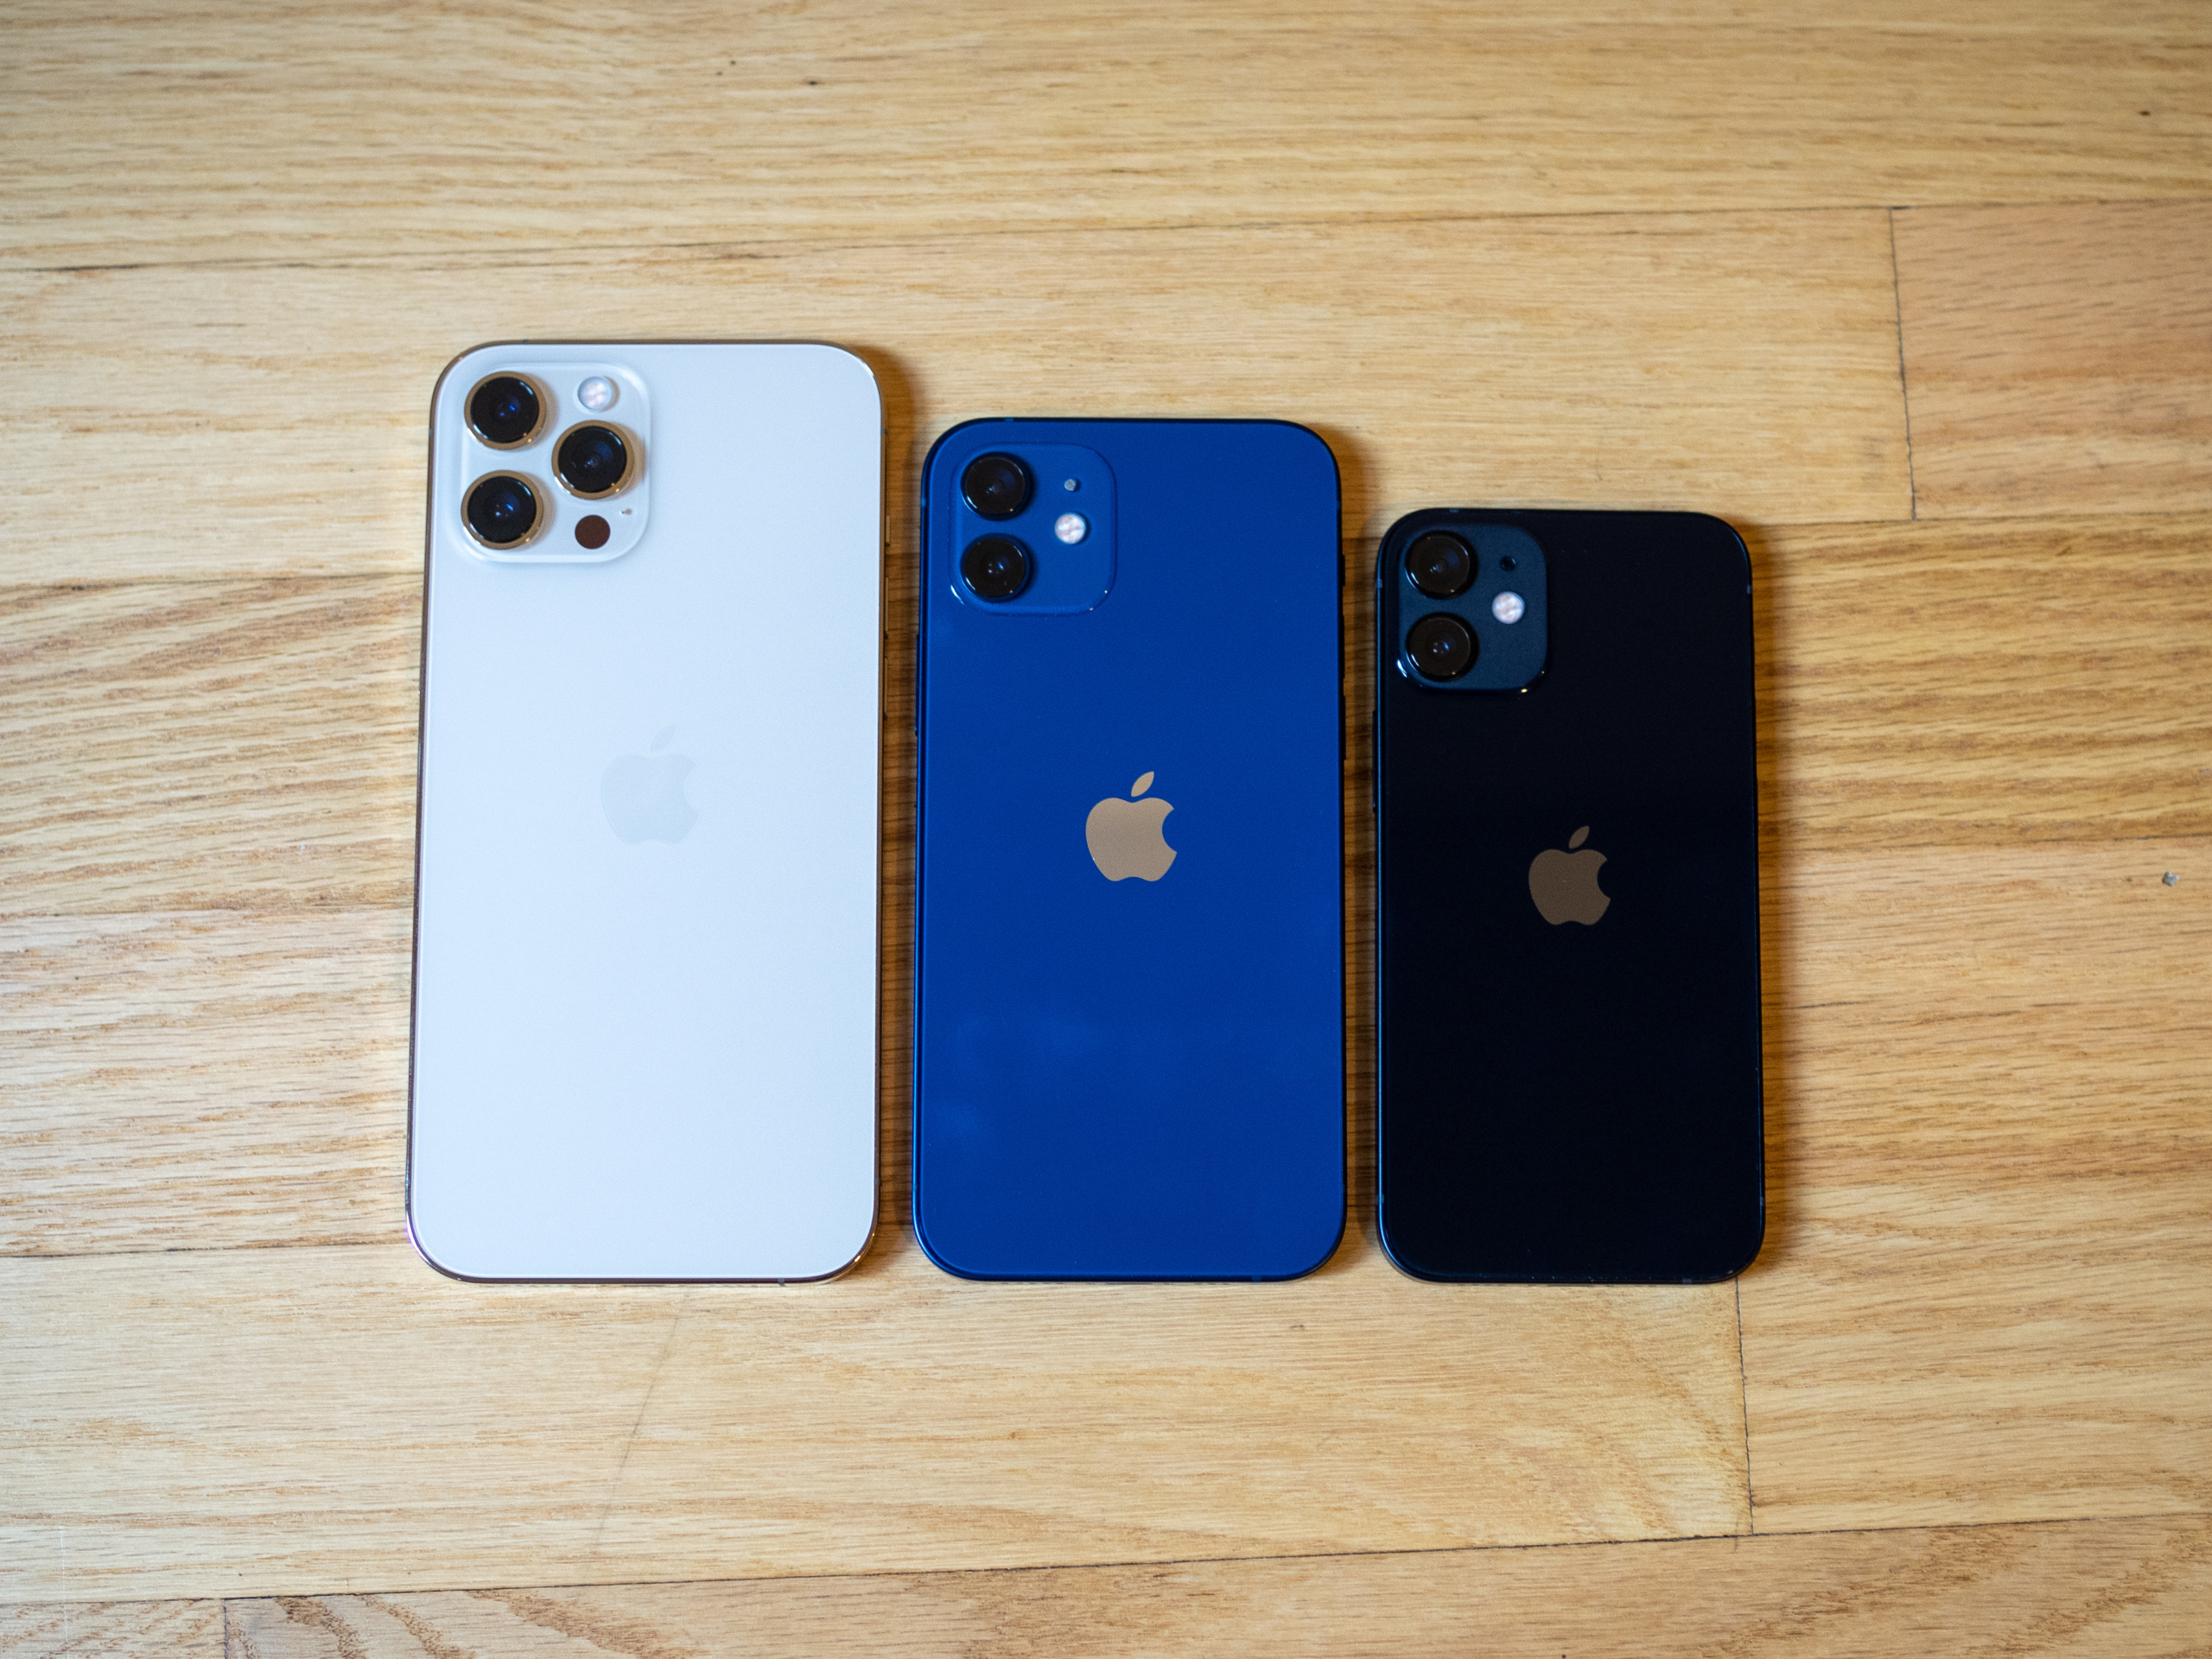  Size comparison: iPhone 12 vs. iPhone 12 Mini vs. iPhone 12 Pro Max